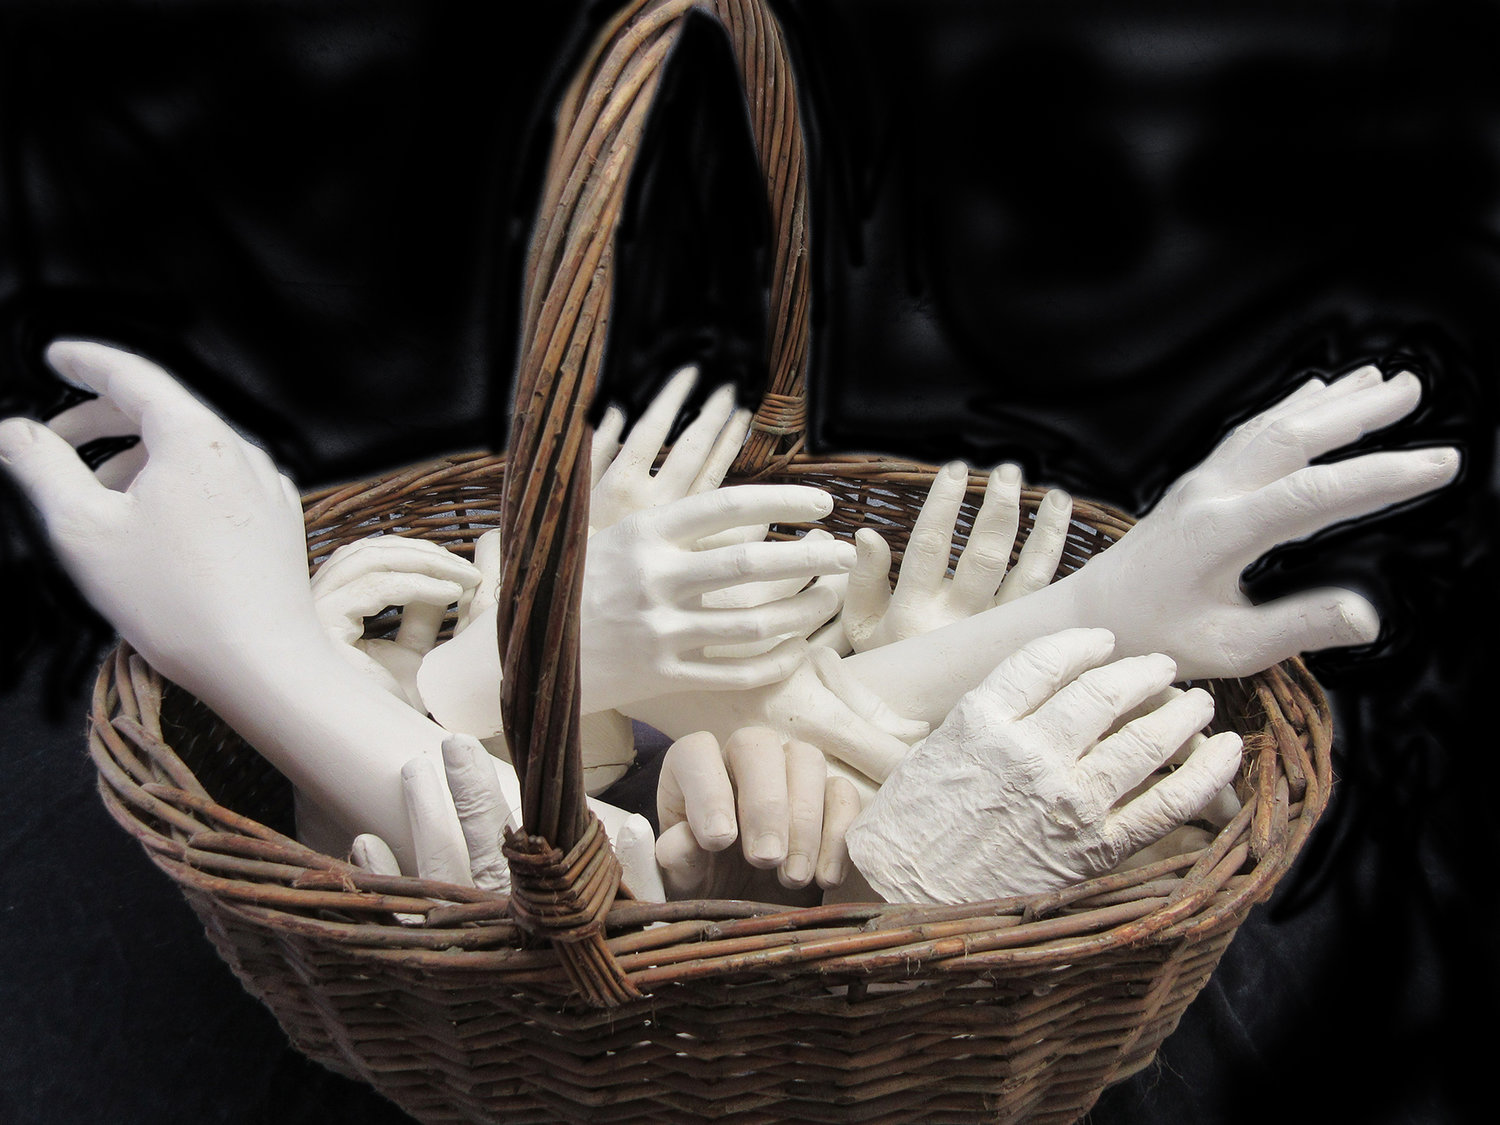 “Basket of Hands” by Pauline Glykokokalos.